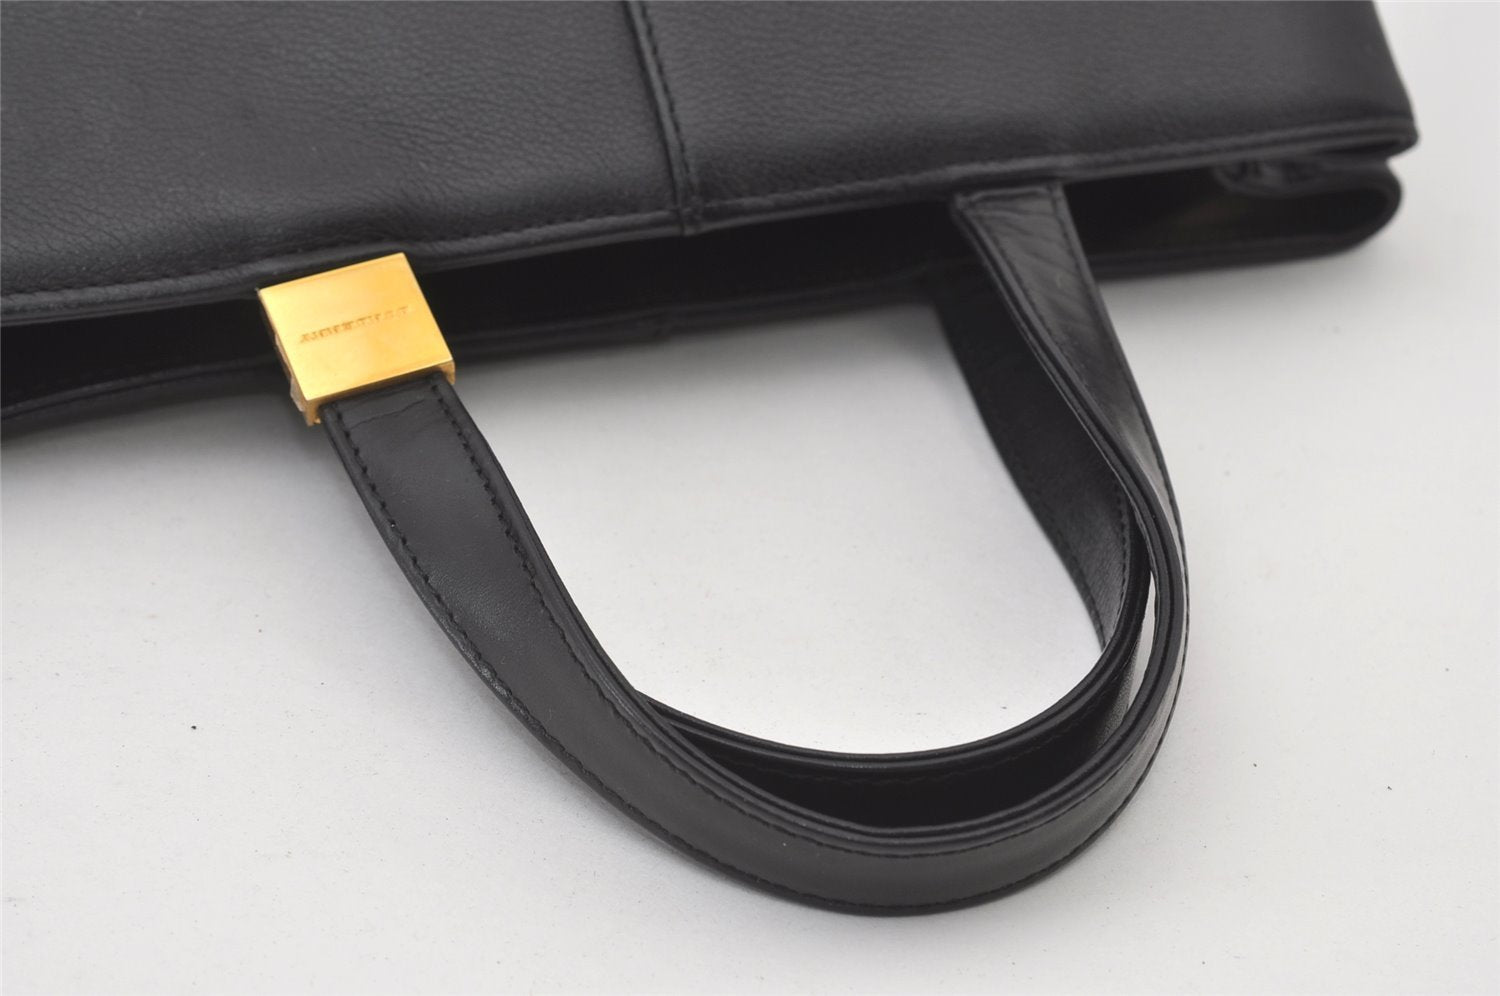 Authentic BURBERRY Vintage Leather Hand Bag Purse Black 0731J